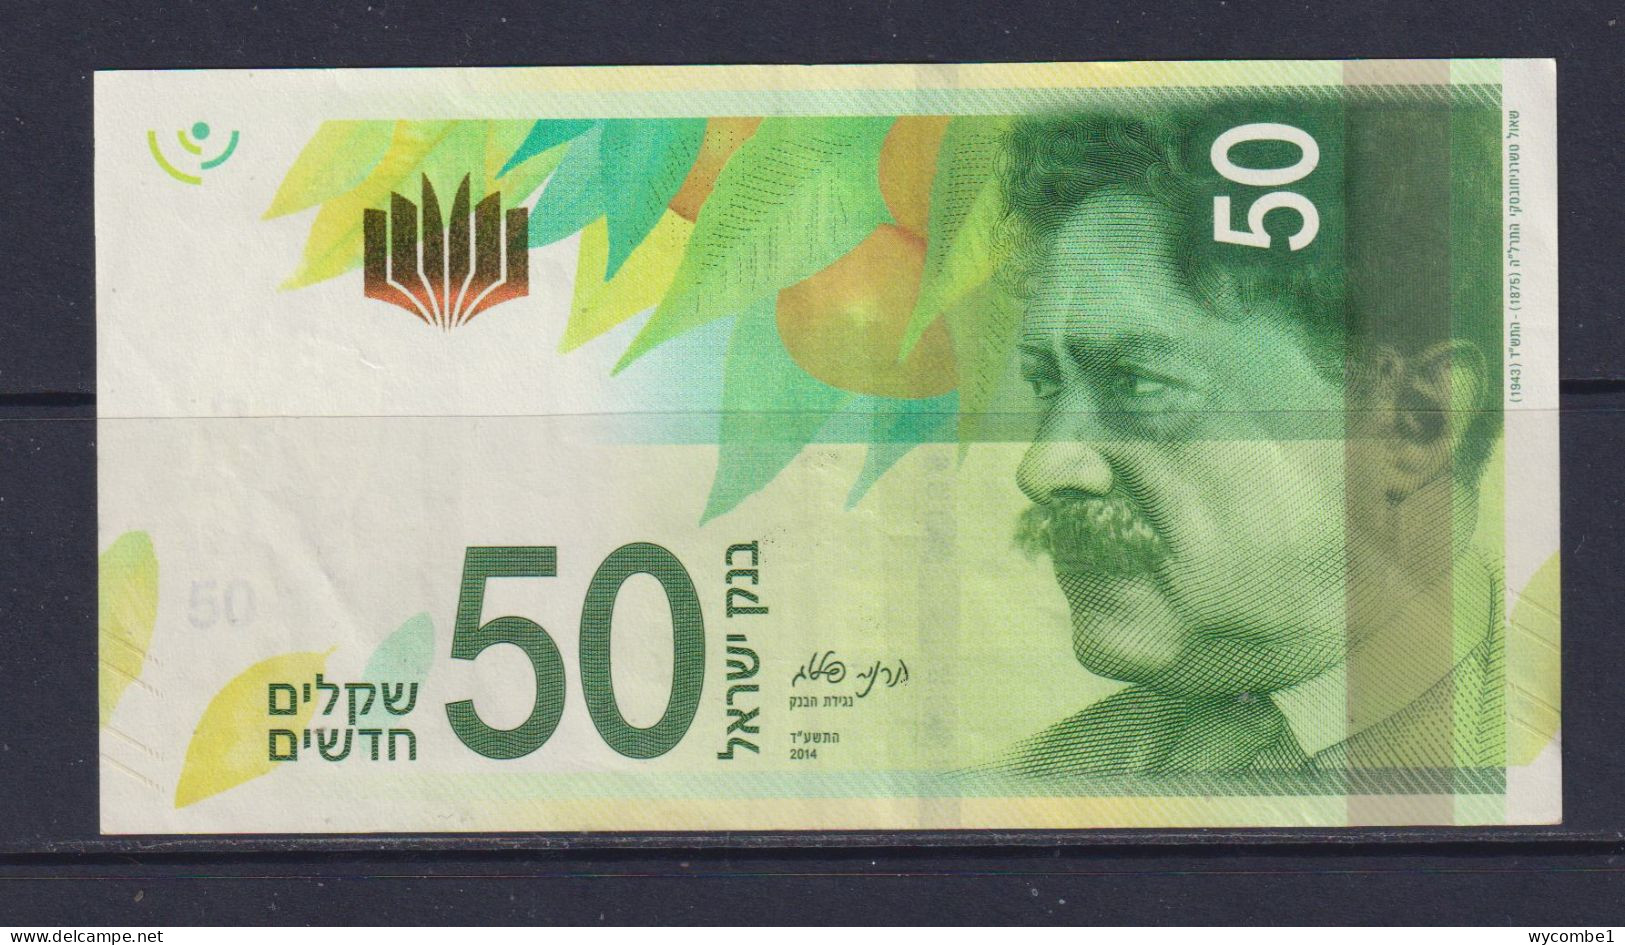 ISRAEL - 2014 50 New Shekels AUNC/XF Banknote - Israël